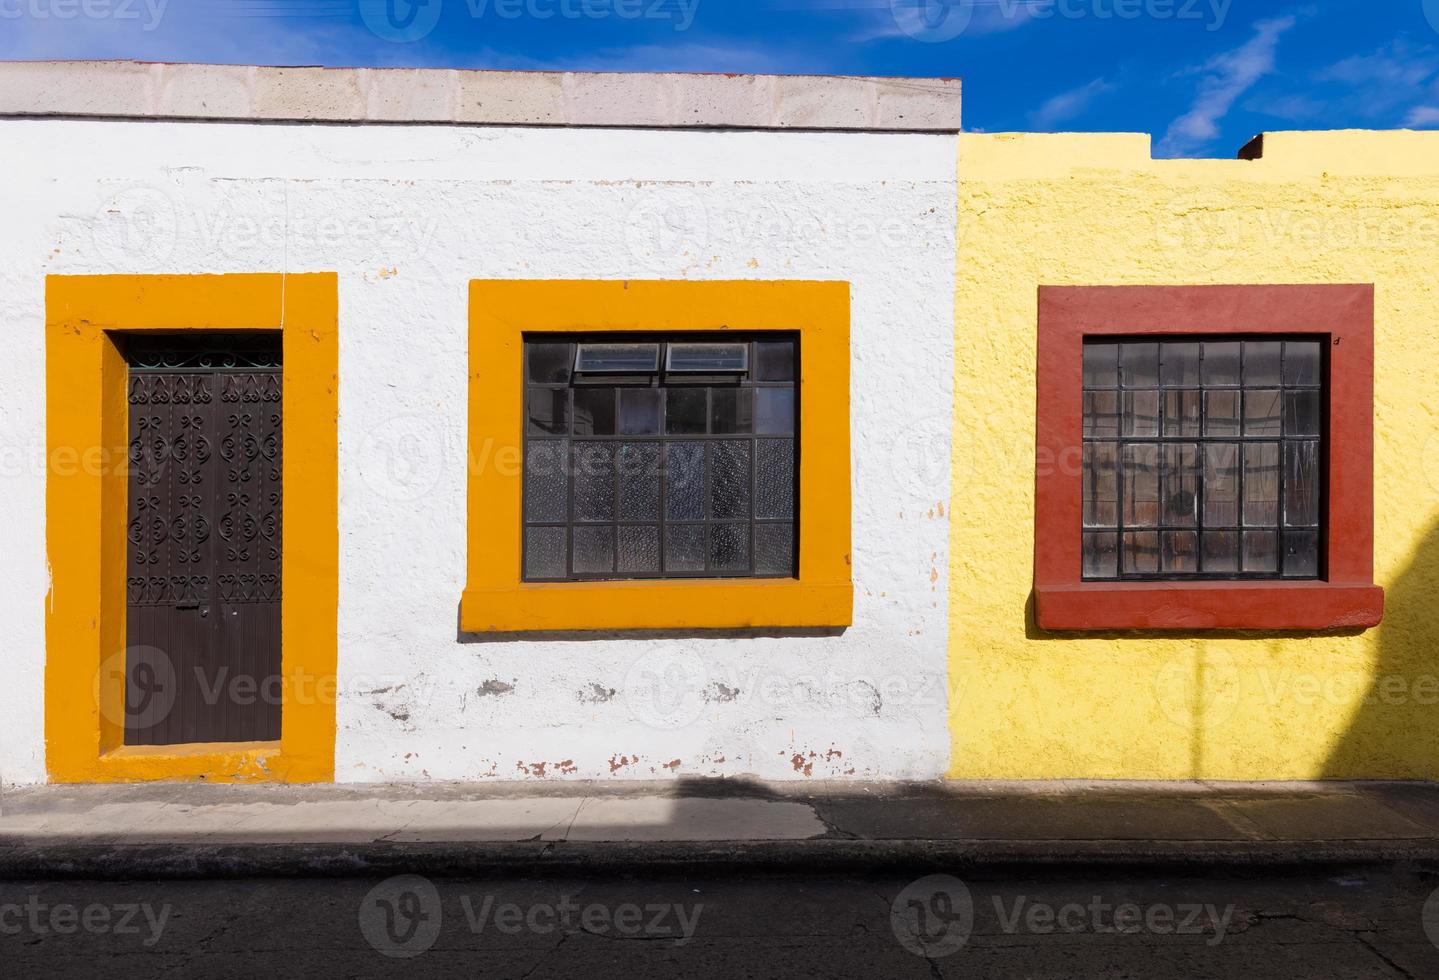 morelia, michoacan, strade colorate e case coloniali nel centro storico di Morelia, una delle principali attrazioni turistiche della città foto